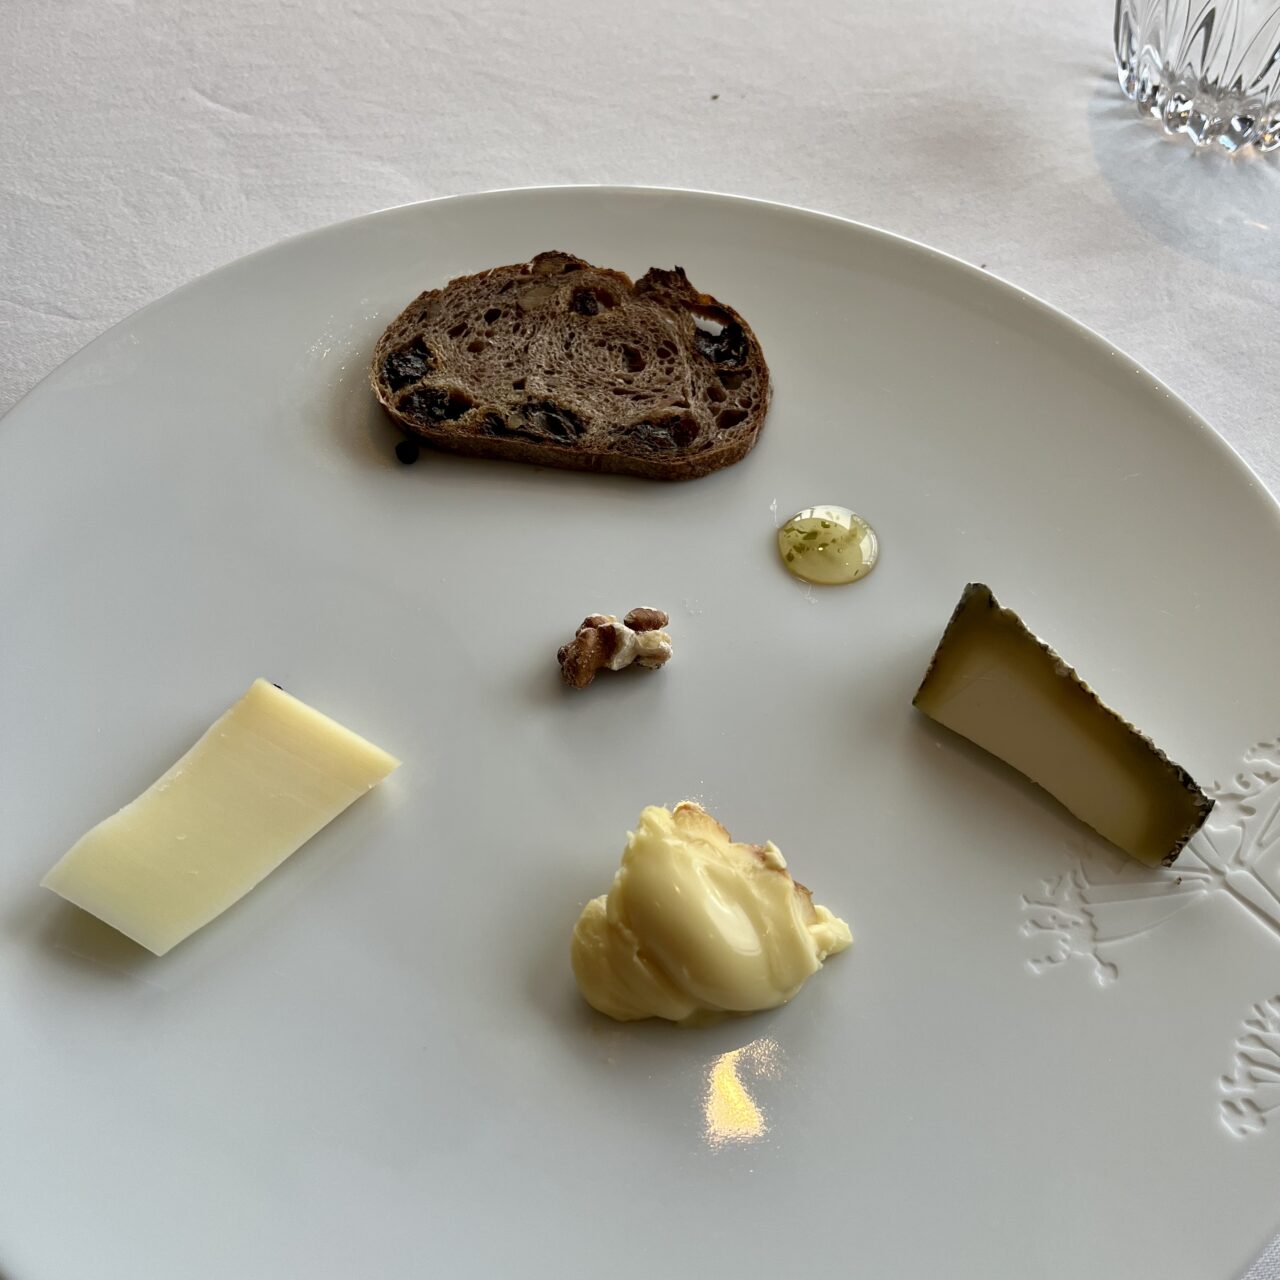 おすすめのチーズ3種。ドミニク・ブシェ・キョウト・ル・レストランののlunch heritageコース